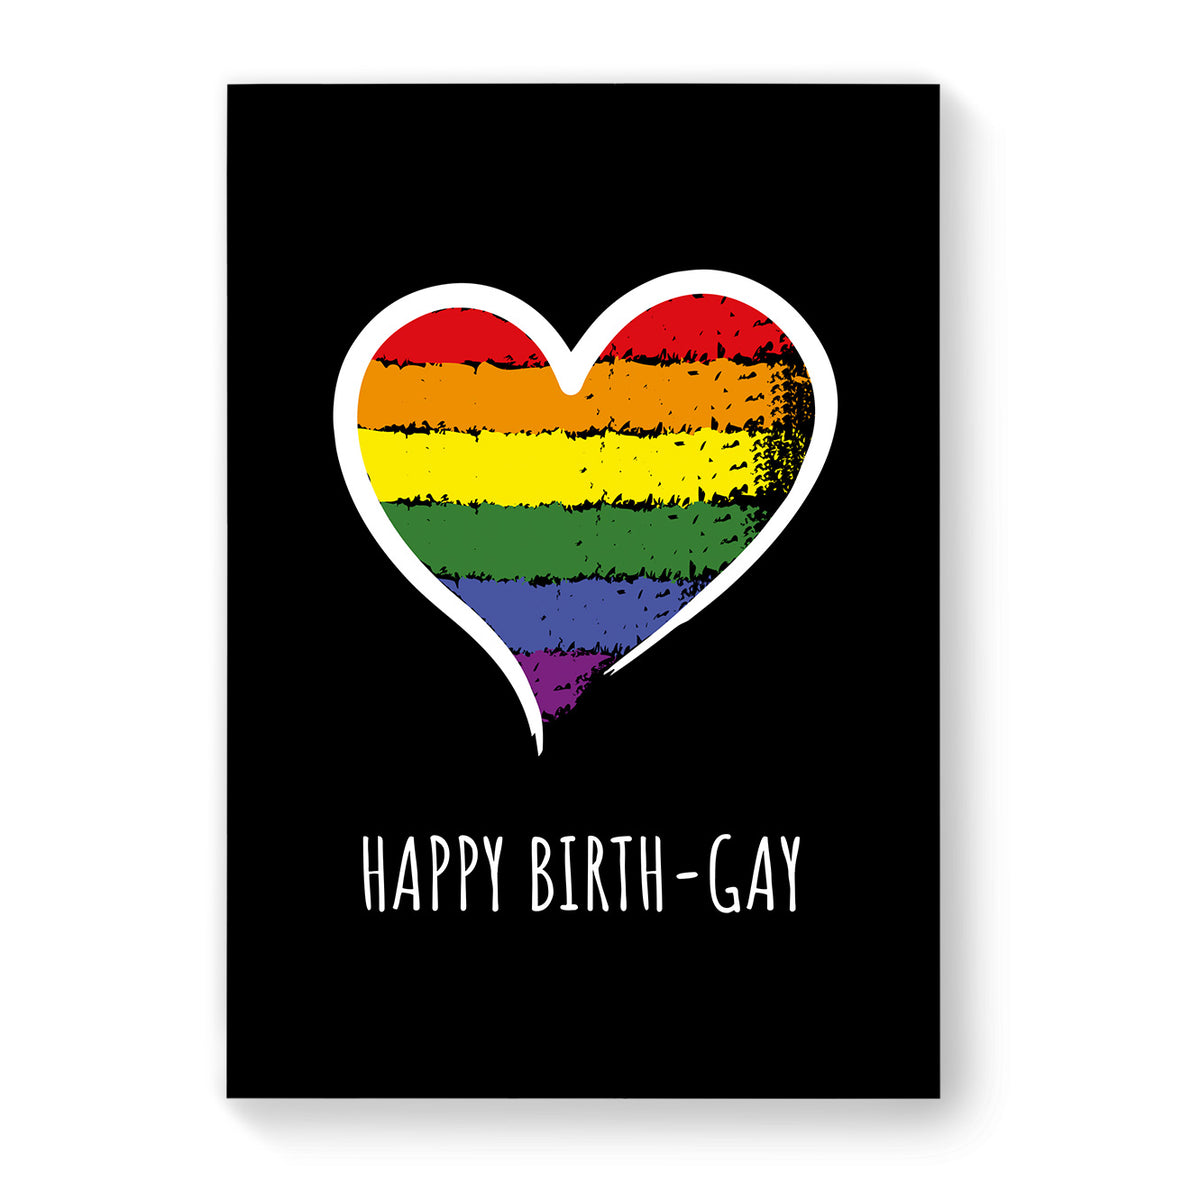 Happy Birth-gay - Lesbian Gay Birthday Card - Large Black Heart | Gift